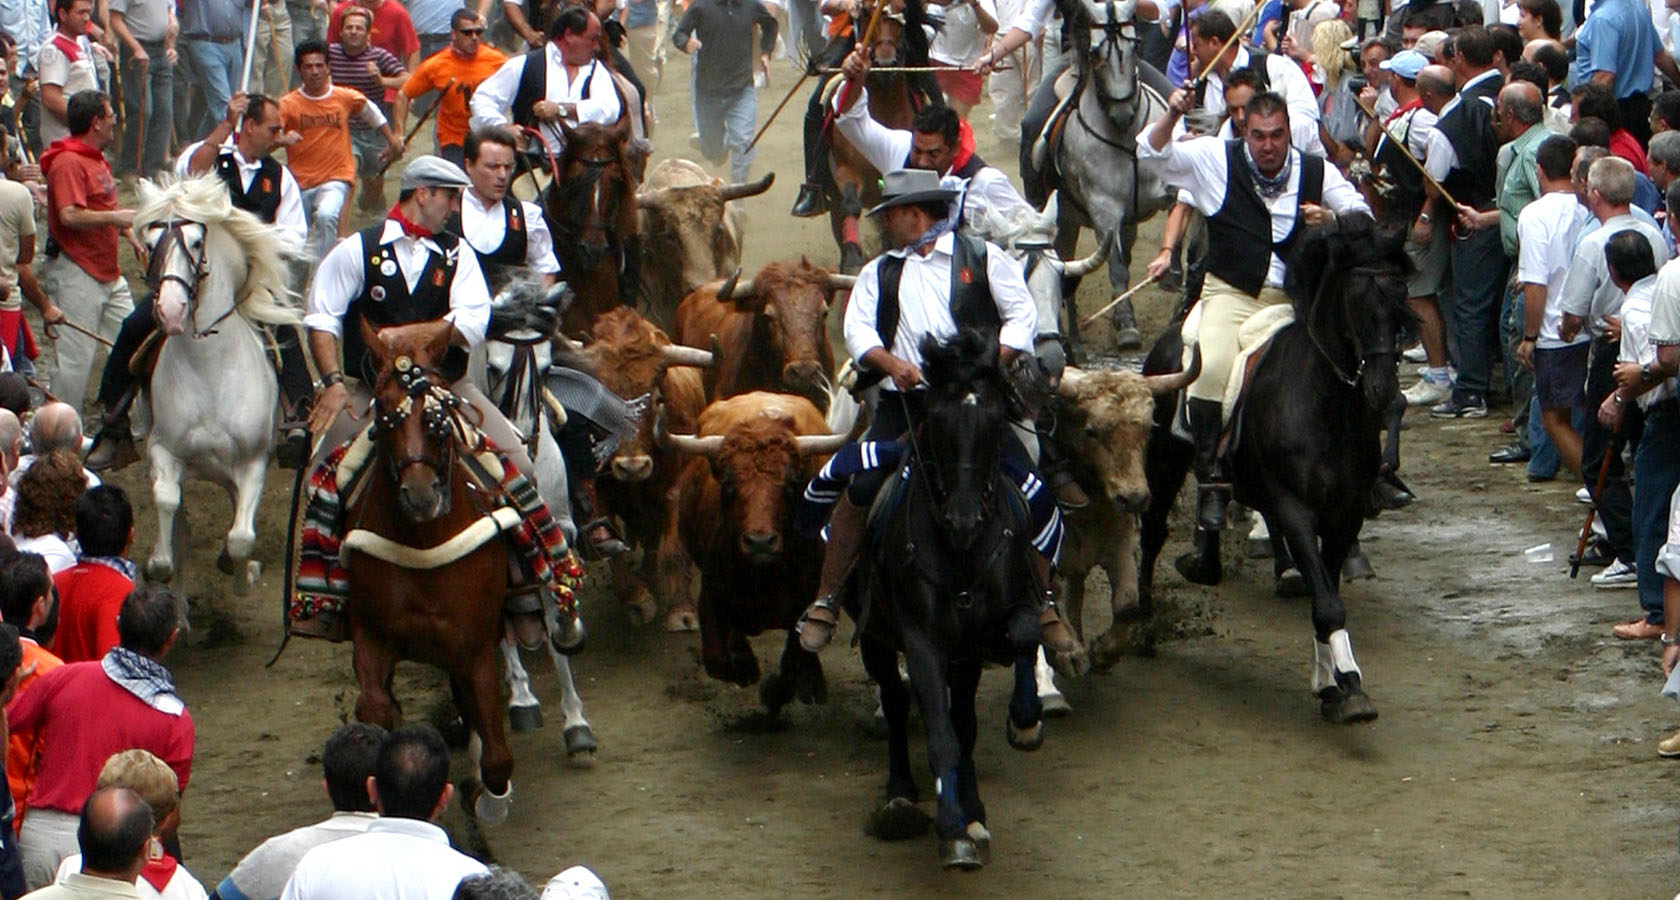 Segorbe马上奔牛节 © Turismo de Segorbe